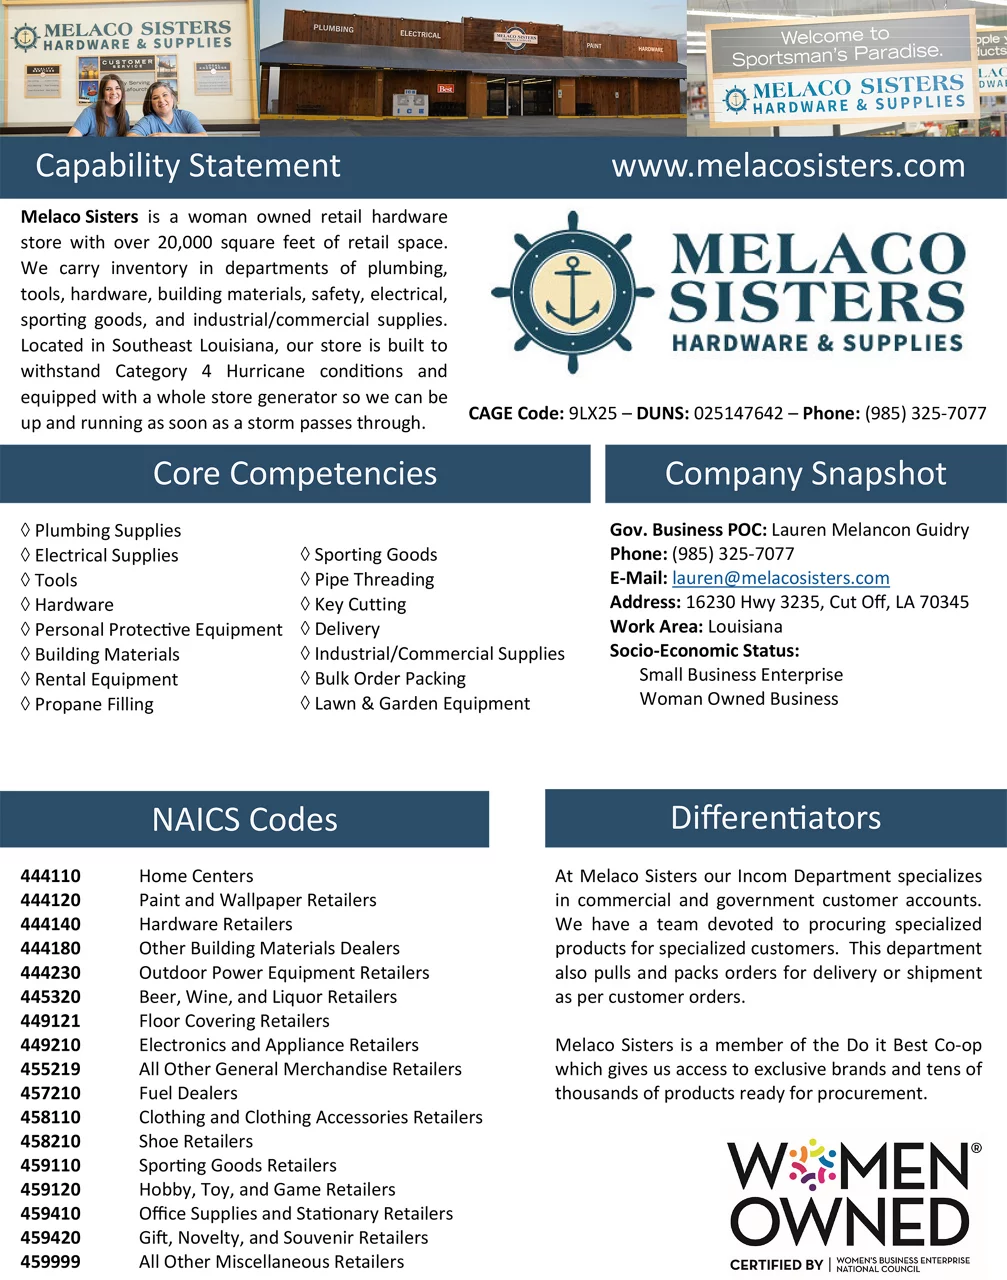 Melaco Sisters Hardware & Supplies Certificate